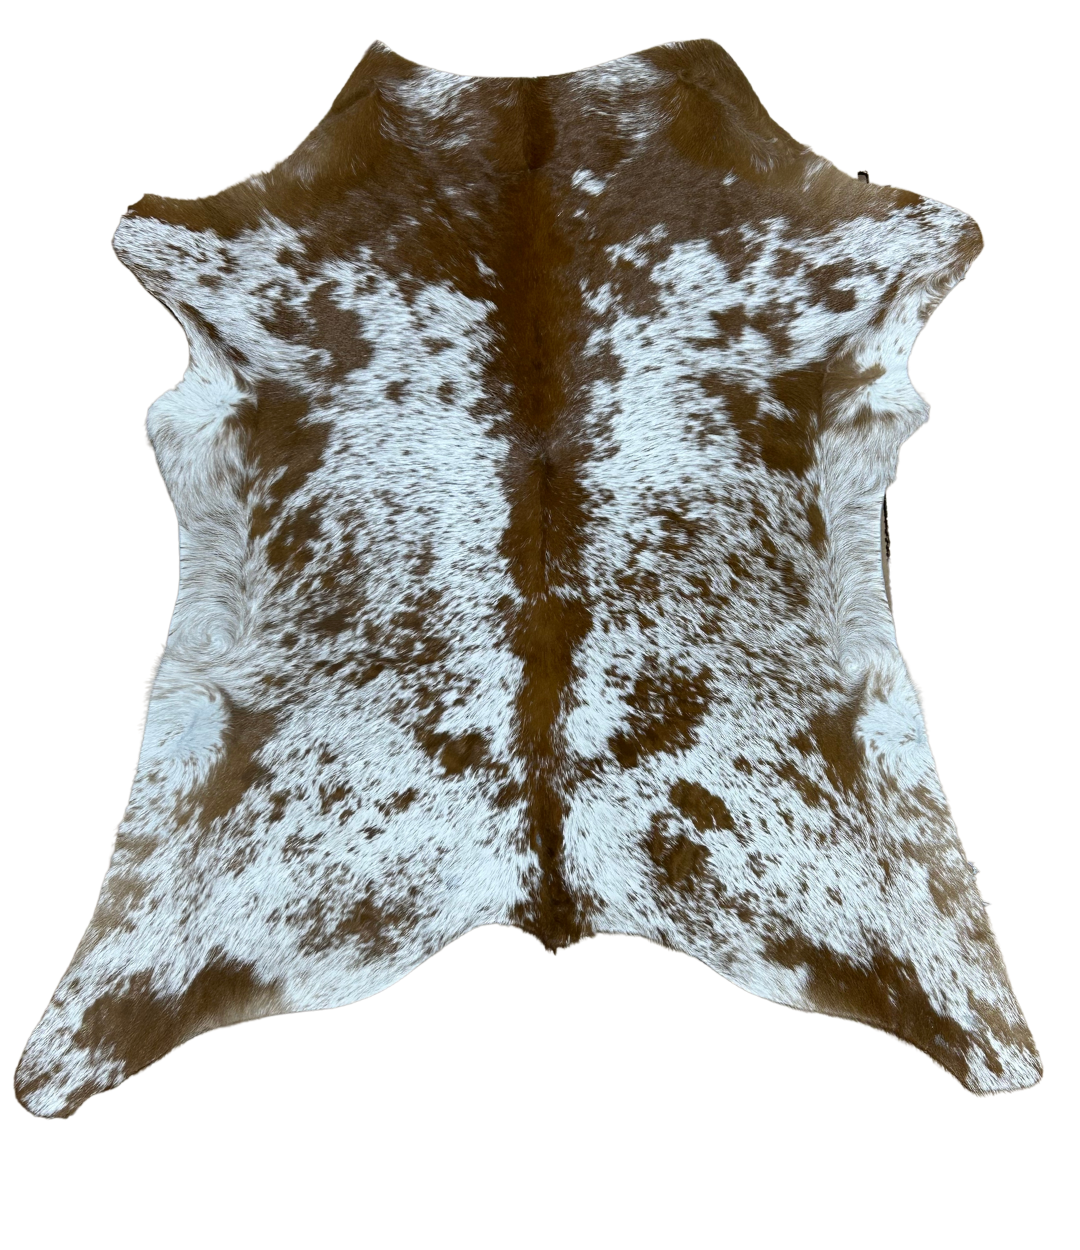 Calf Hide - Rare - Speckled Brown & White (0016)